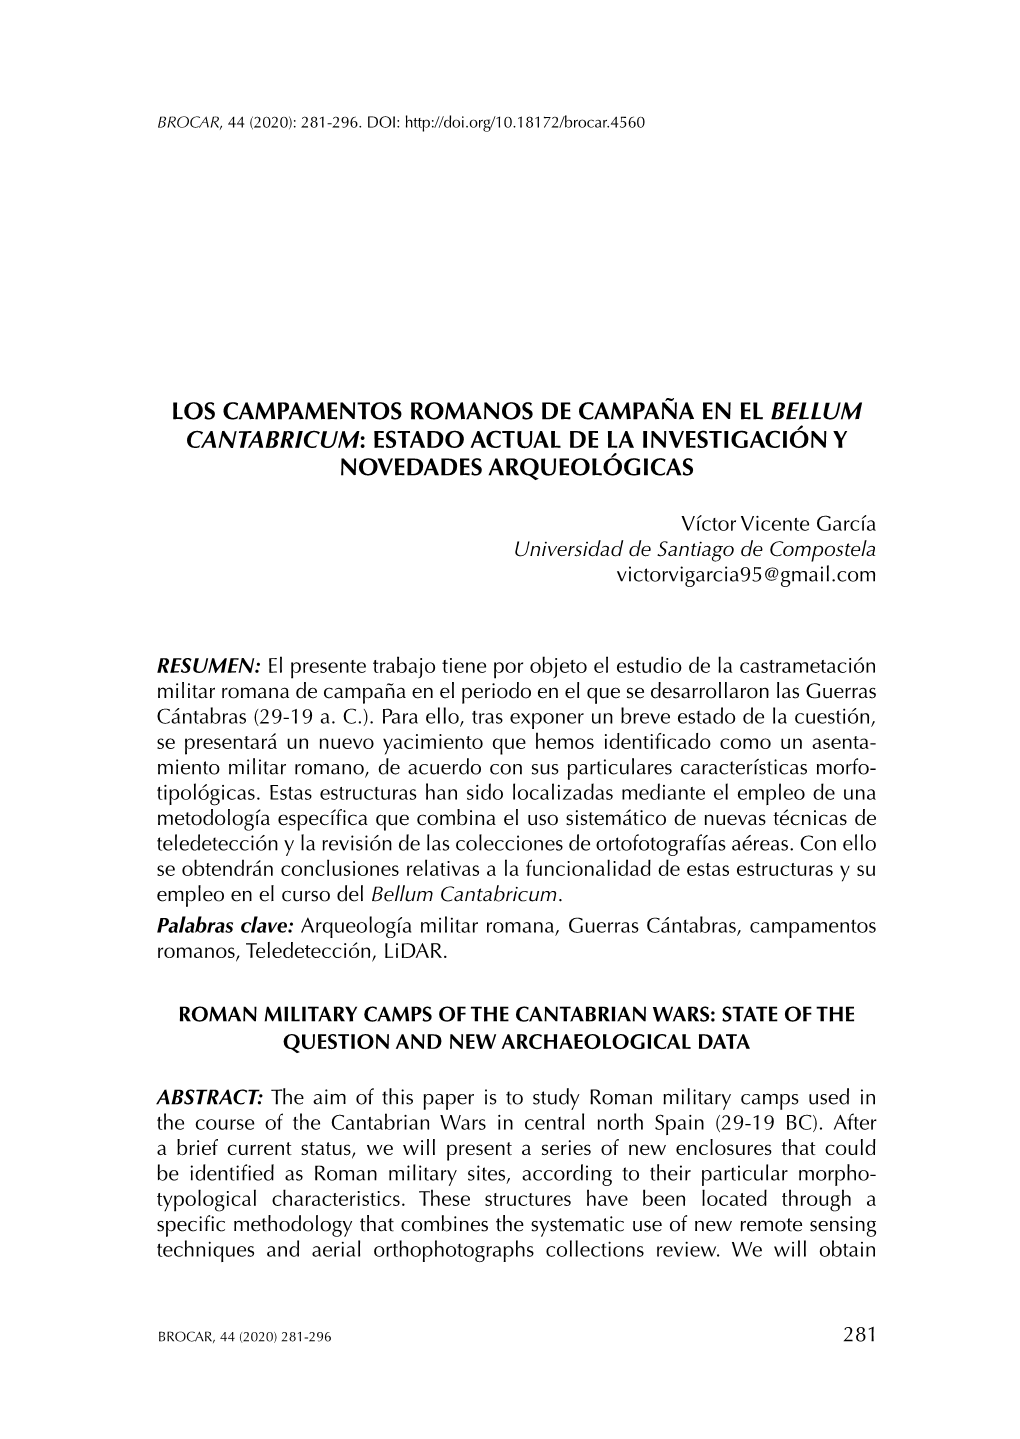 Los Campamentos Romanos De Campaña En El Bellum Cantabricum: Estado Actual De La Investigación Y Novedades Arqueológicas